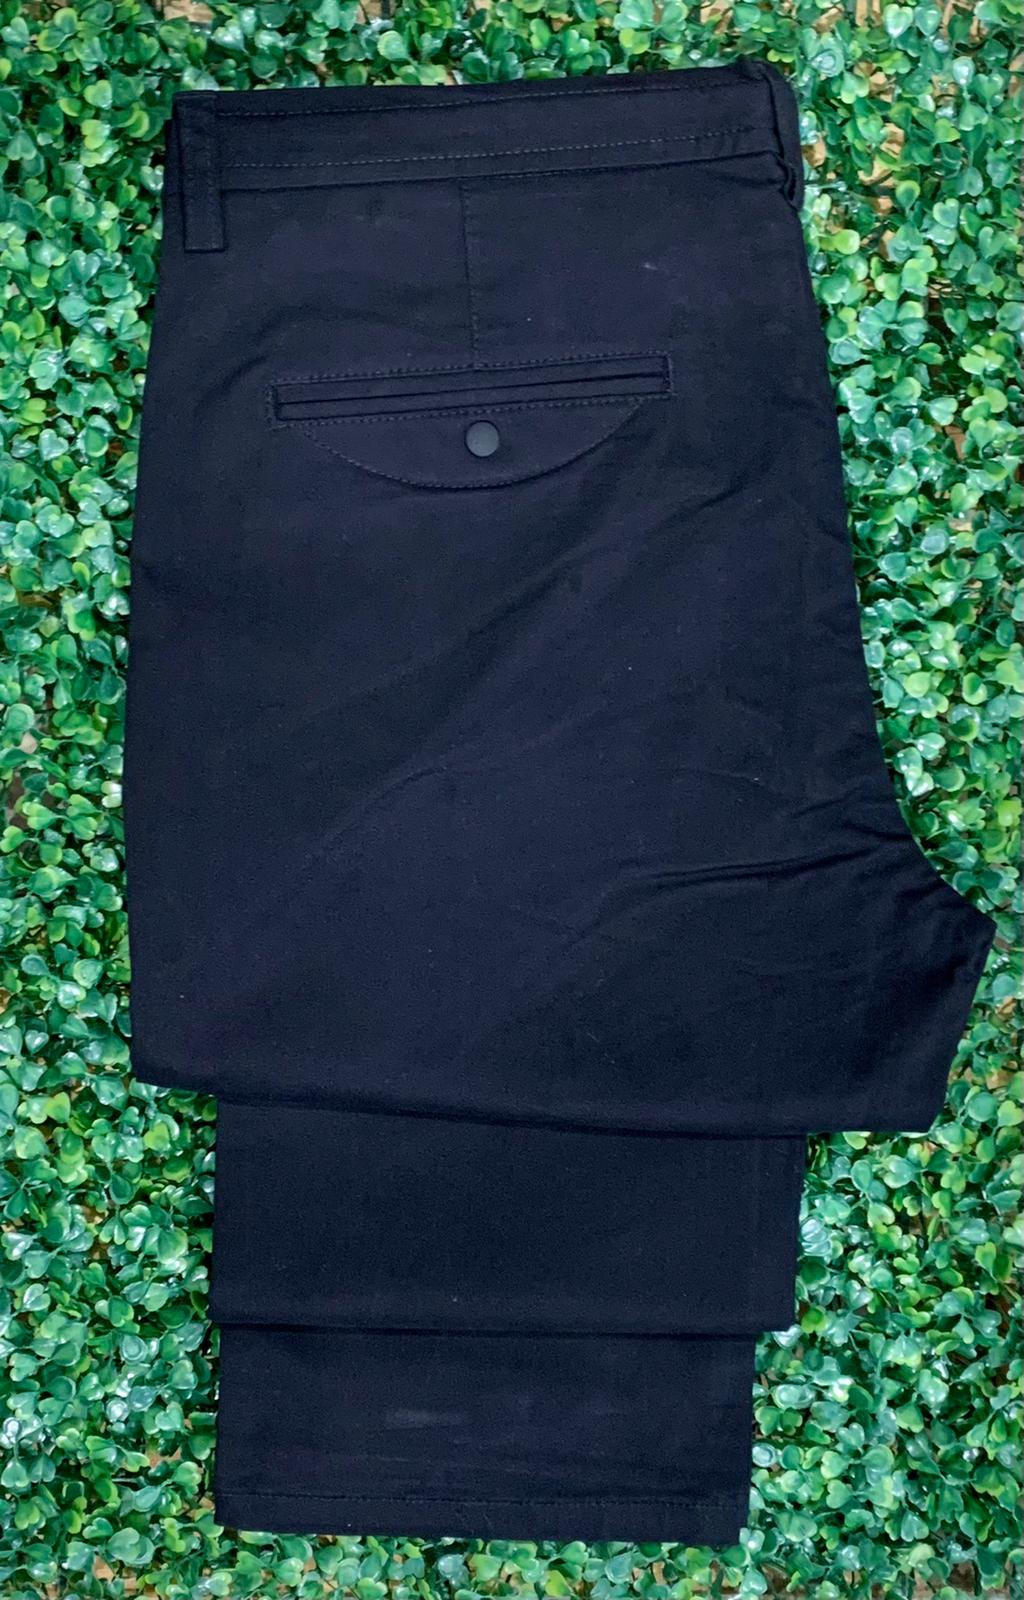 Casual pants color black